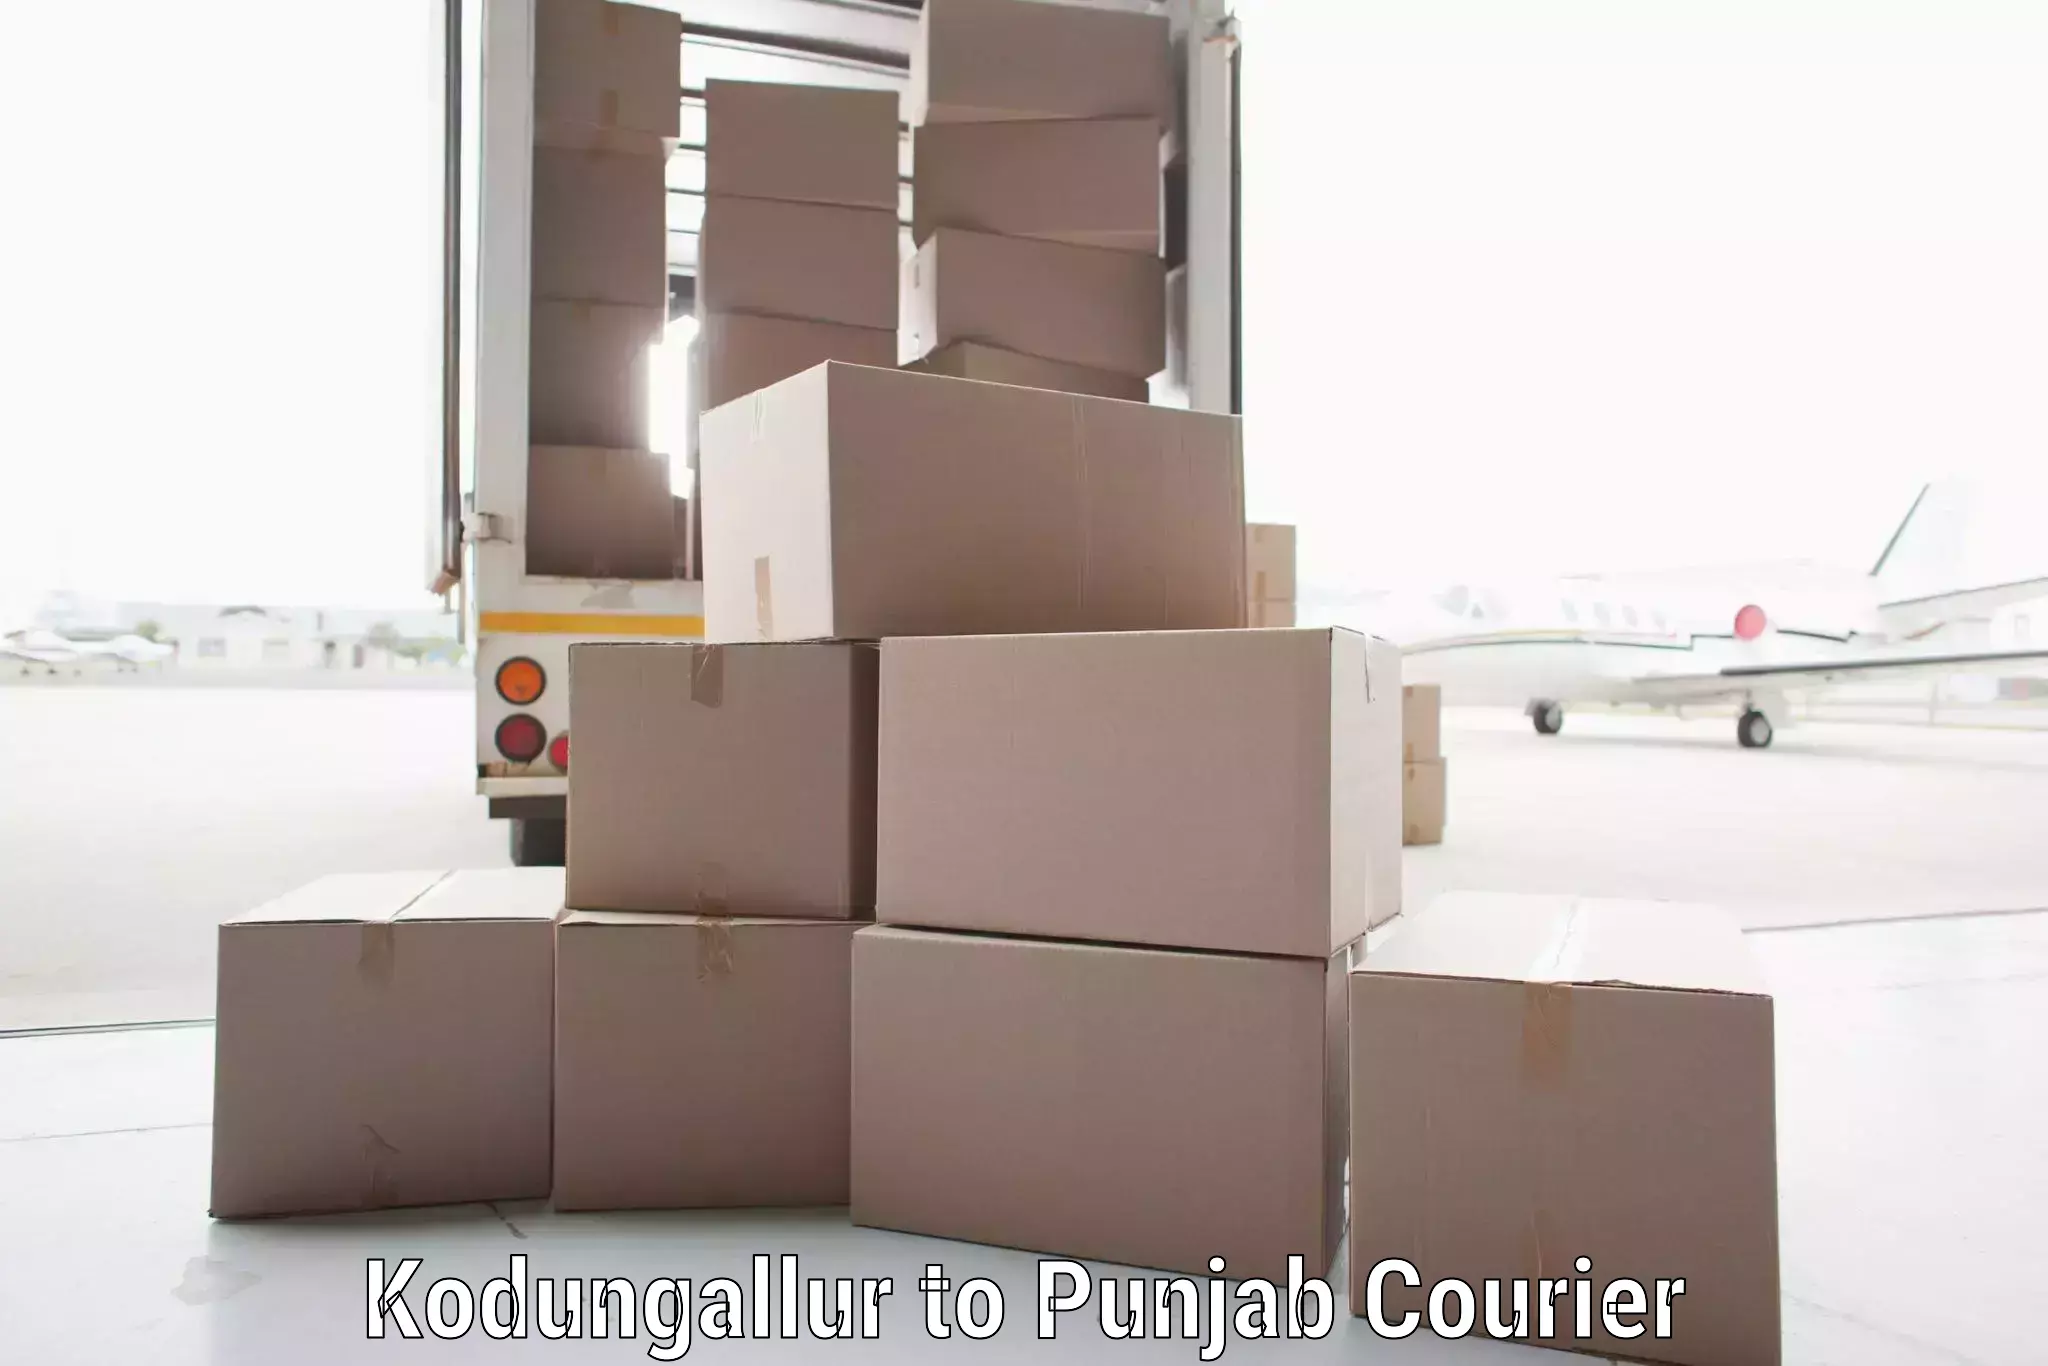 Courier services Kodungallur to Dera Bassi